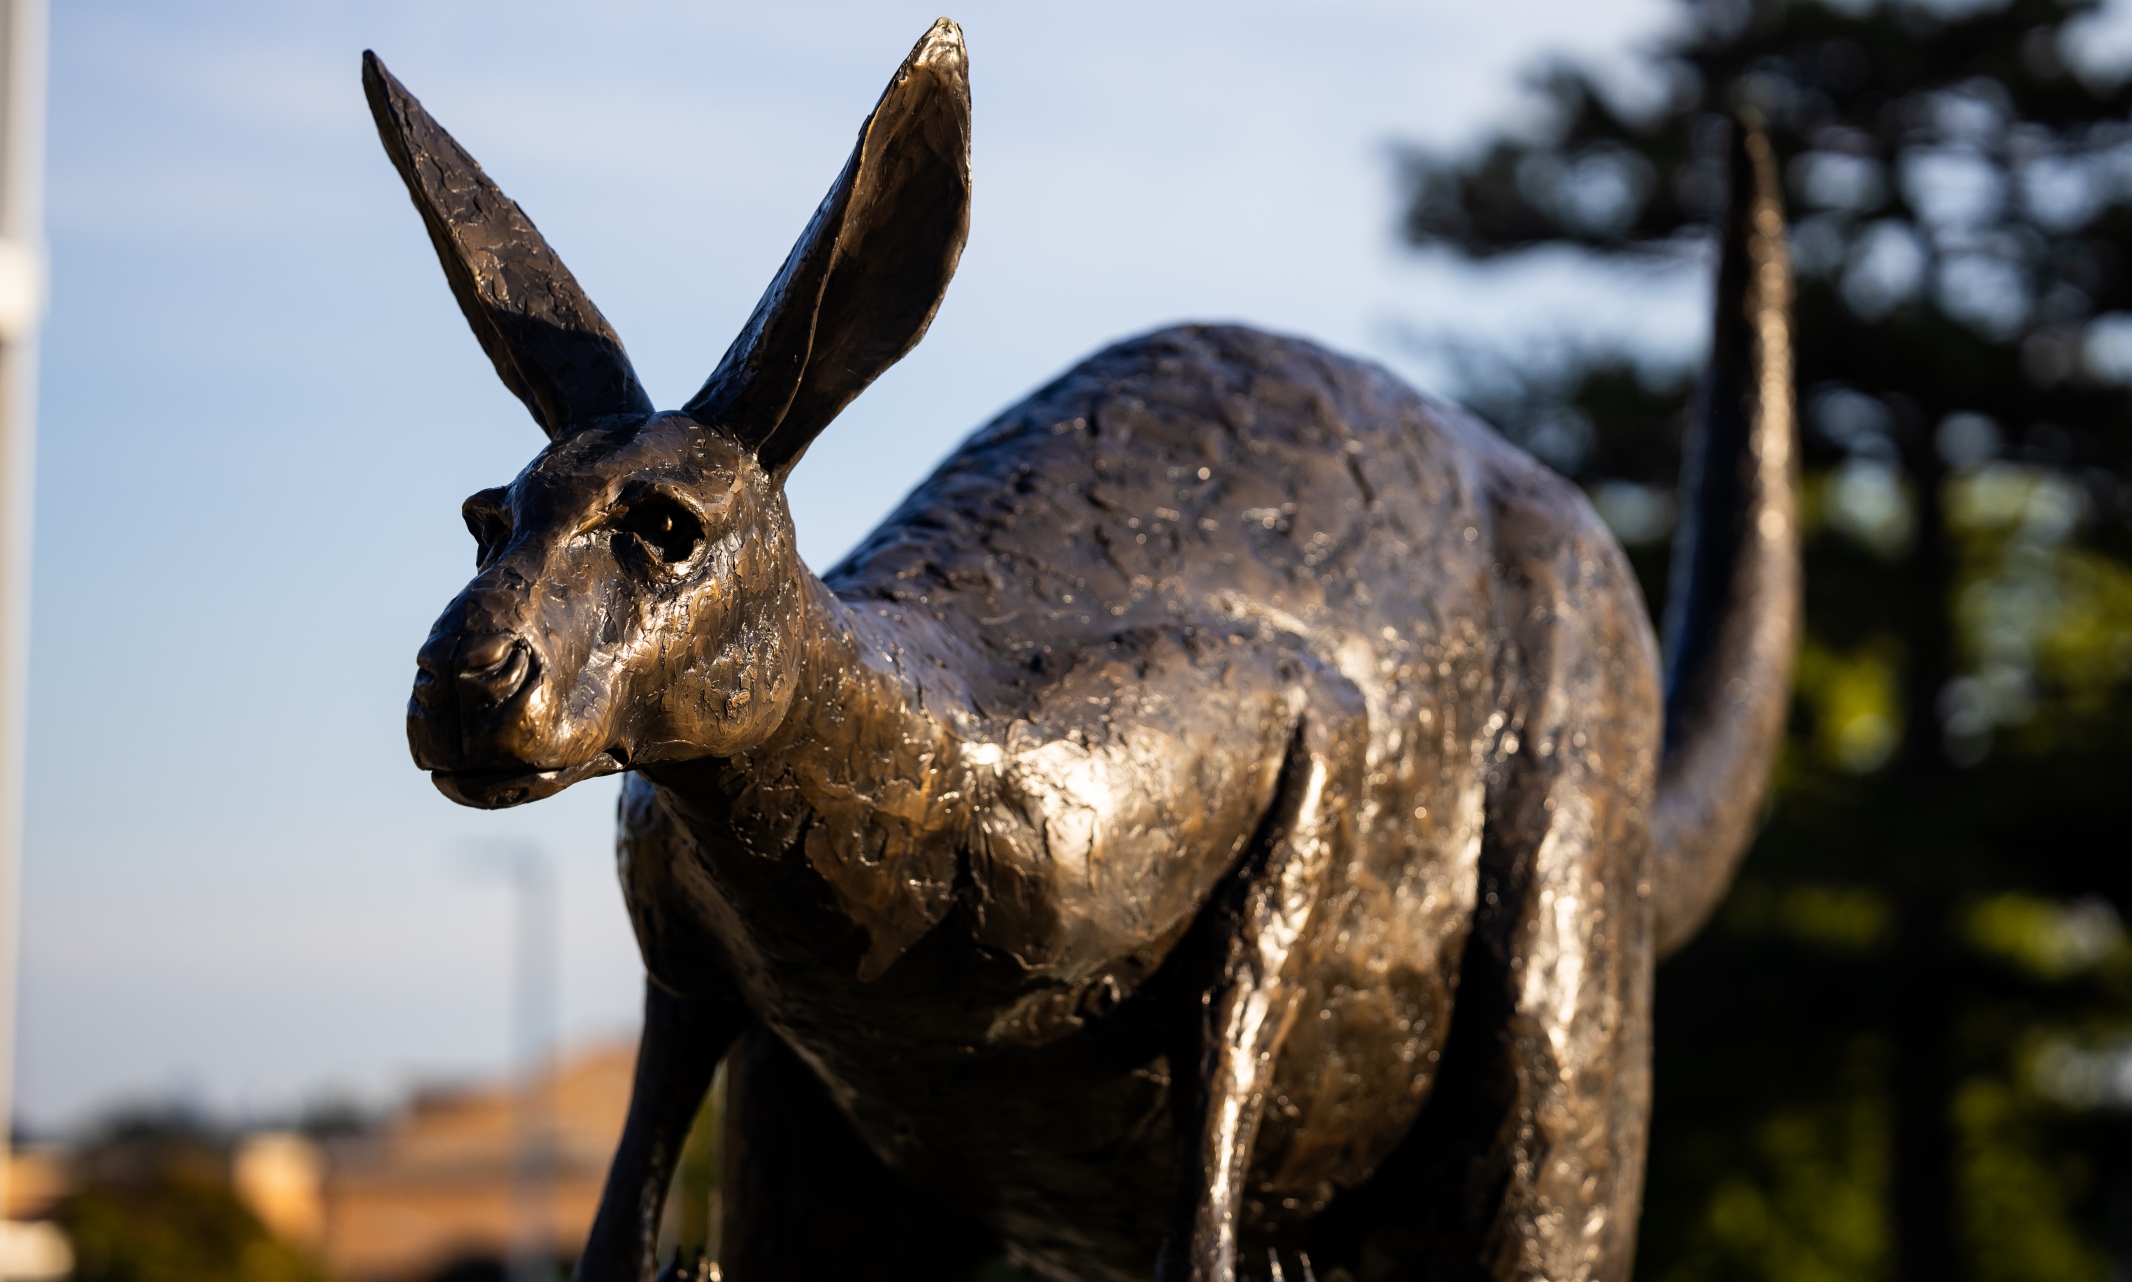 A statue of a kangaroo 